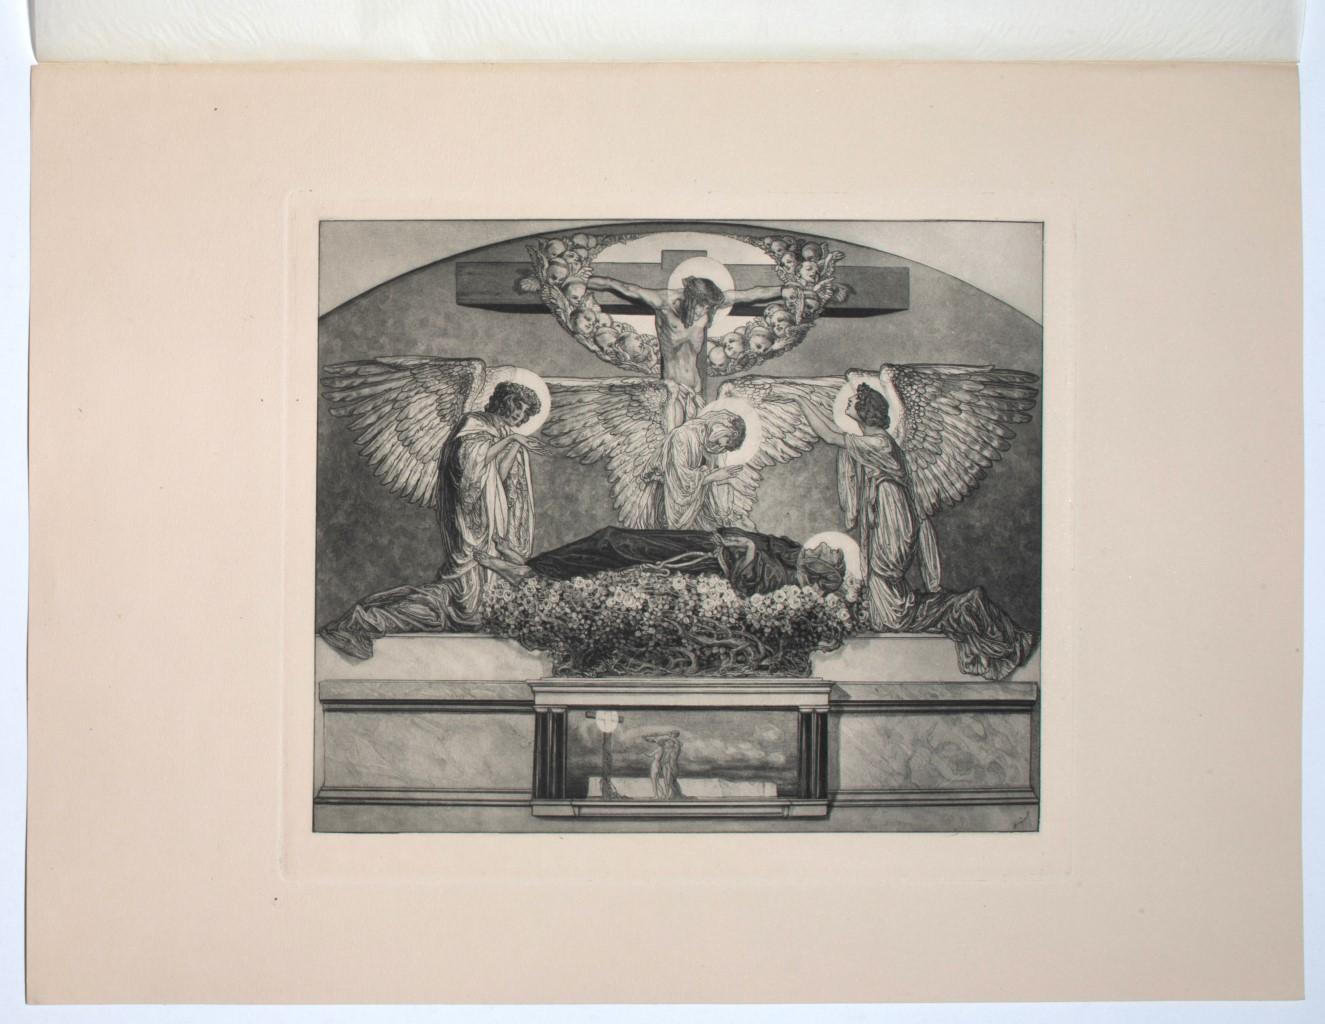 Sankt Franziskus - Héliogravure by Franz von Bayros - 20th Century - Print by Franz von Bayros (Choisi Le Conin)